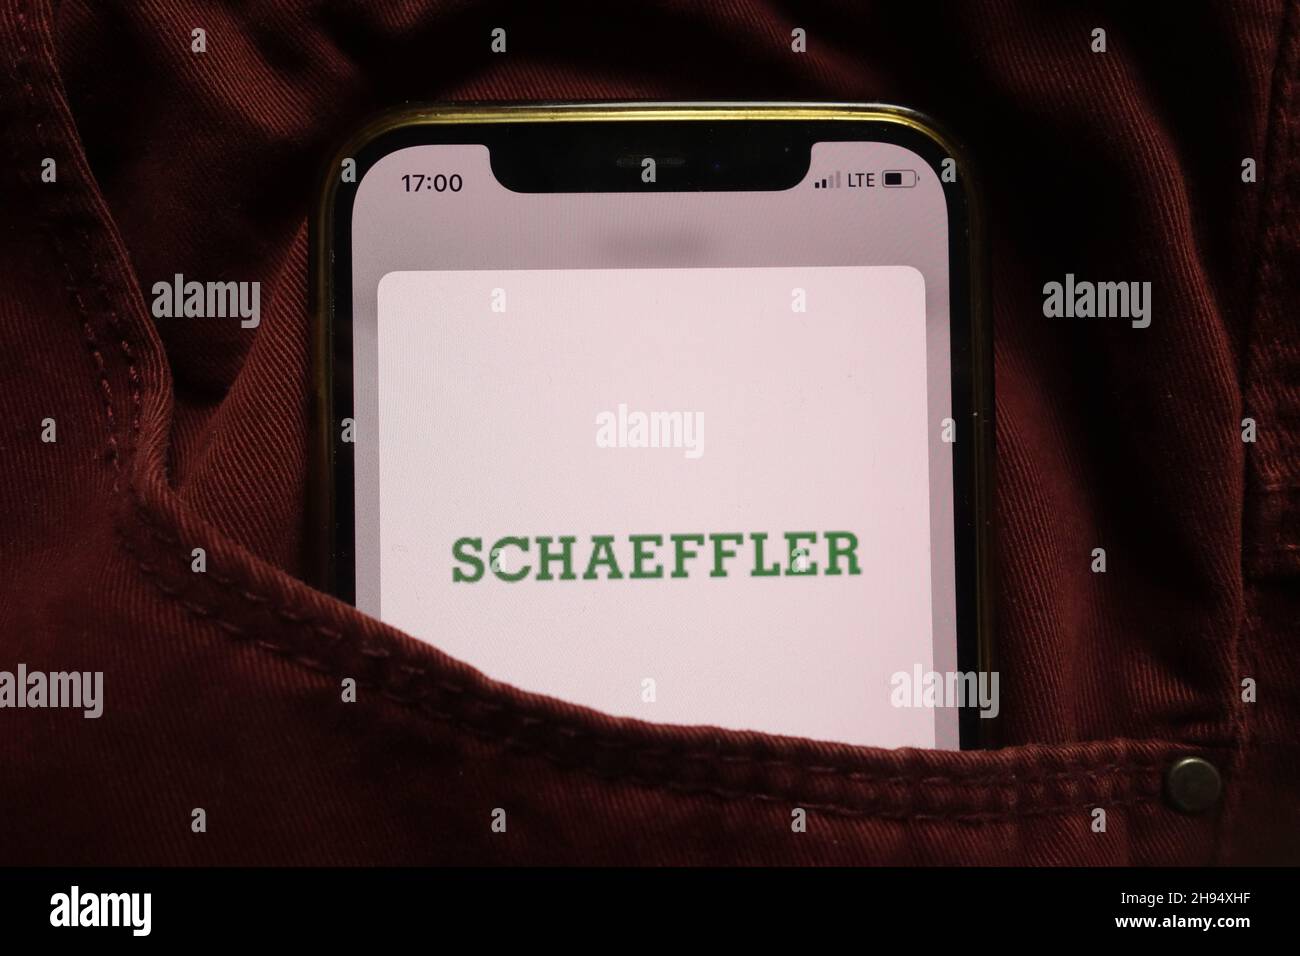 KONSKIE, POLEN - 15. September 2021: Das Logo der Schaeffler Gruppe wird auf dem Mobiltelefon in der Jeanentasche versteckt angezeigt Stockfoto